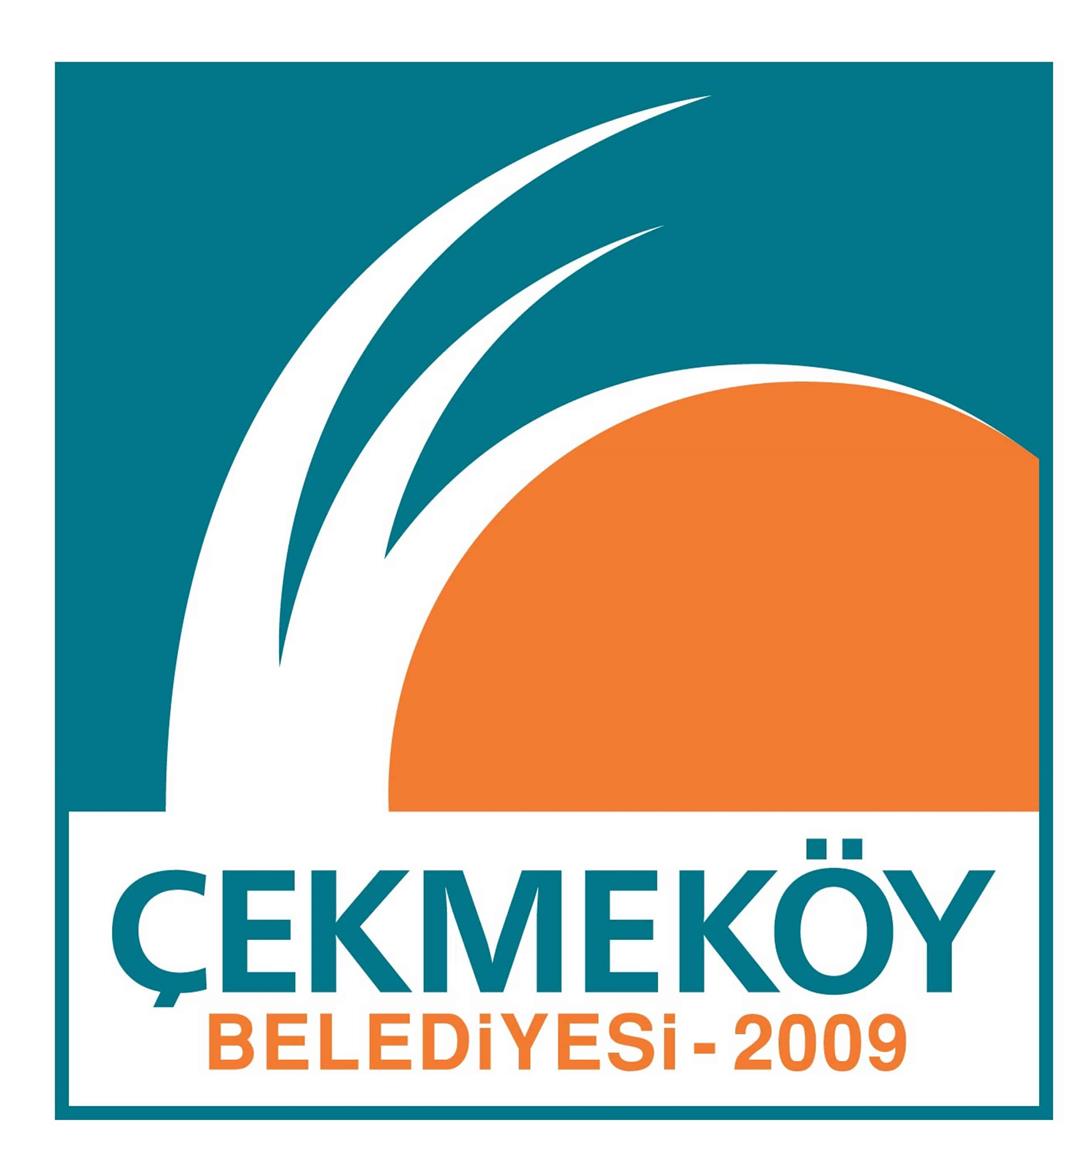 cekmekoy belediyesi logo